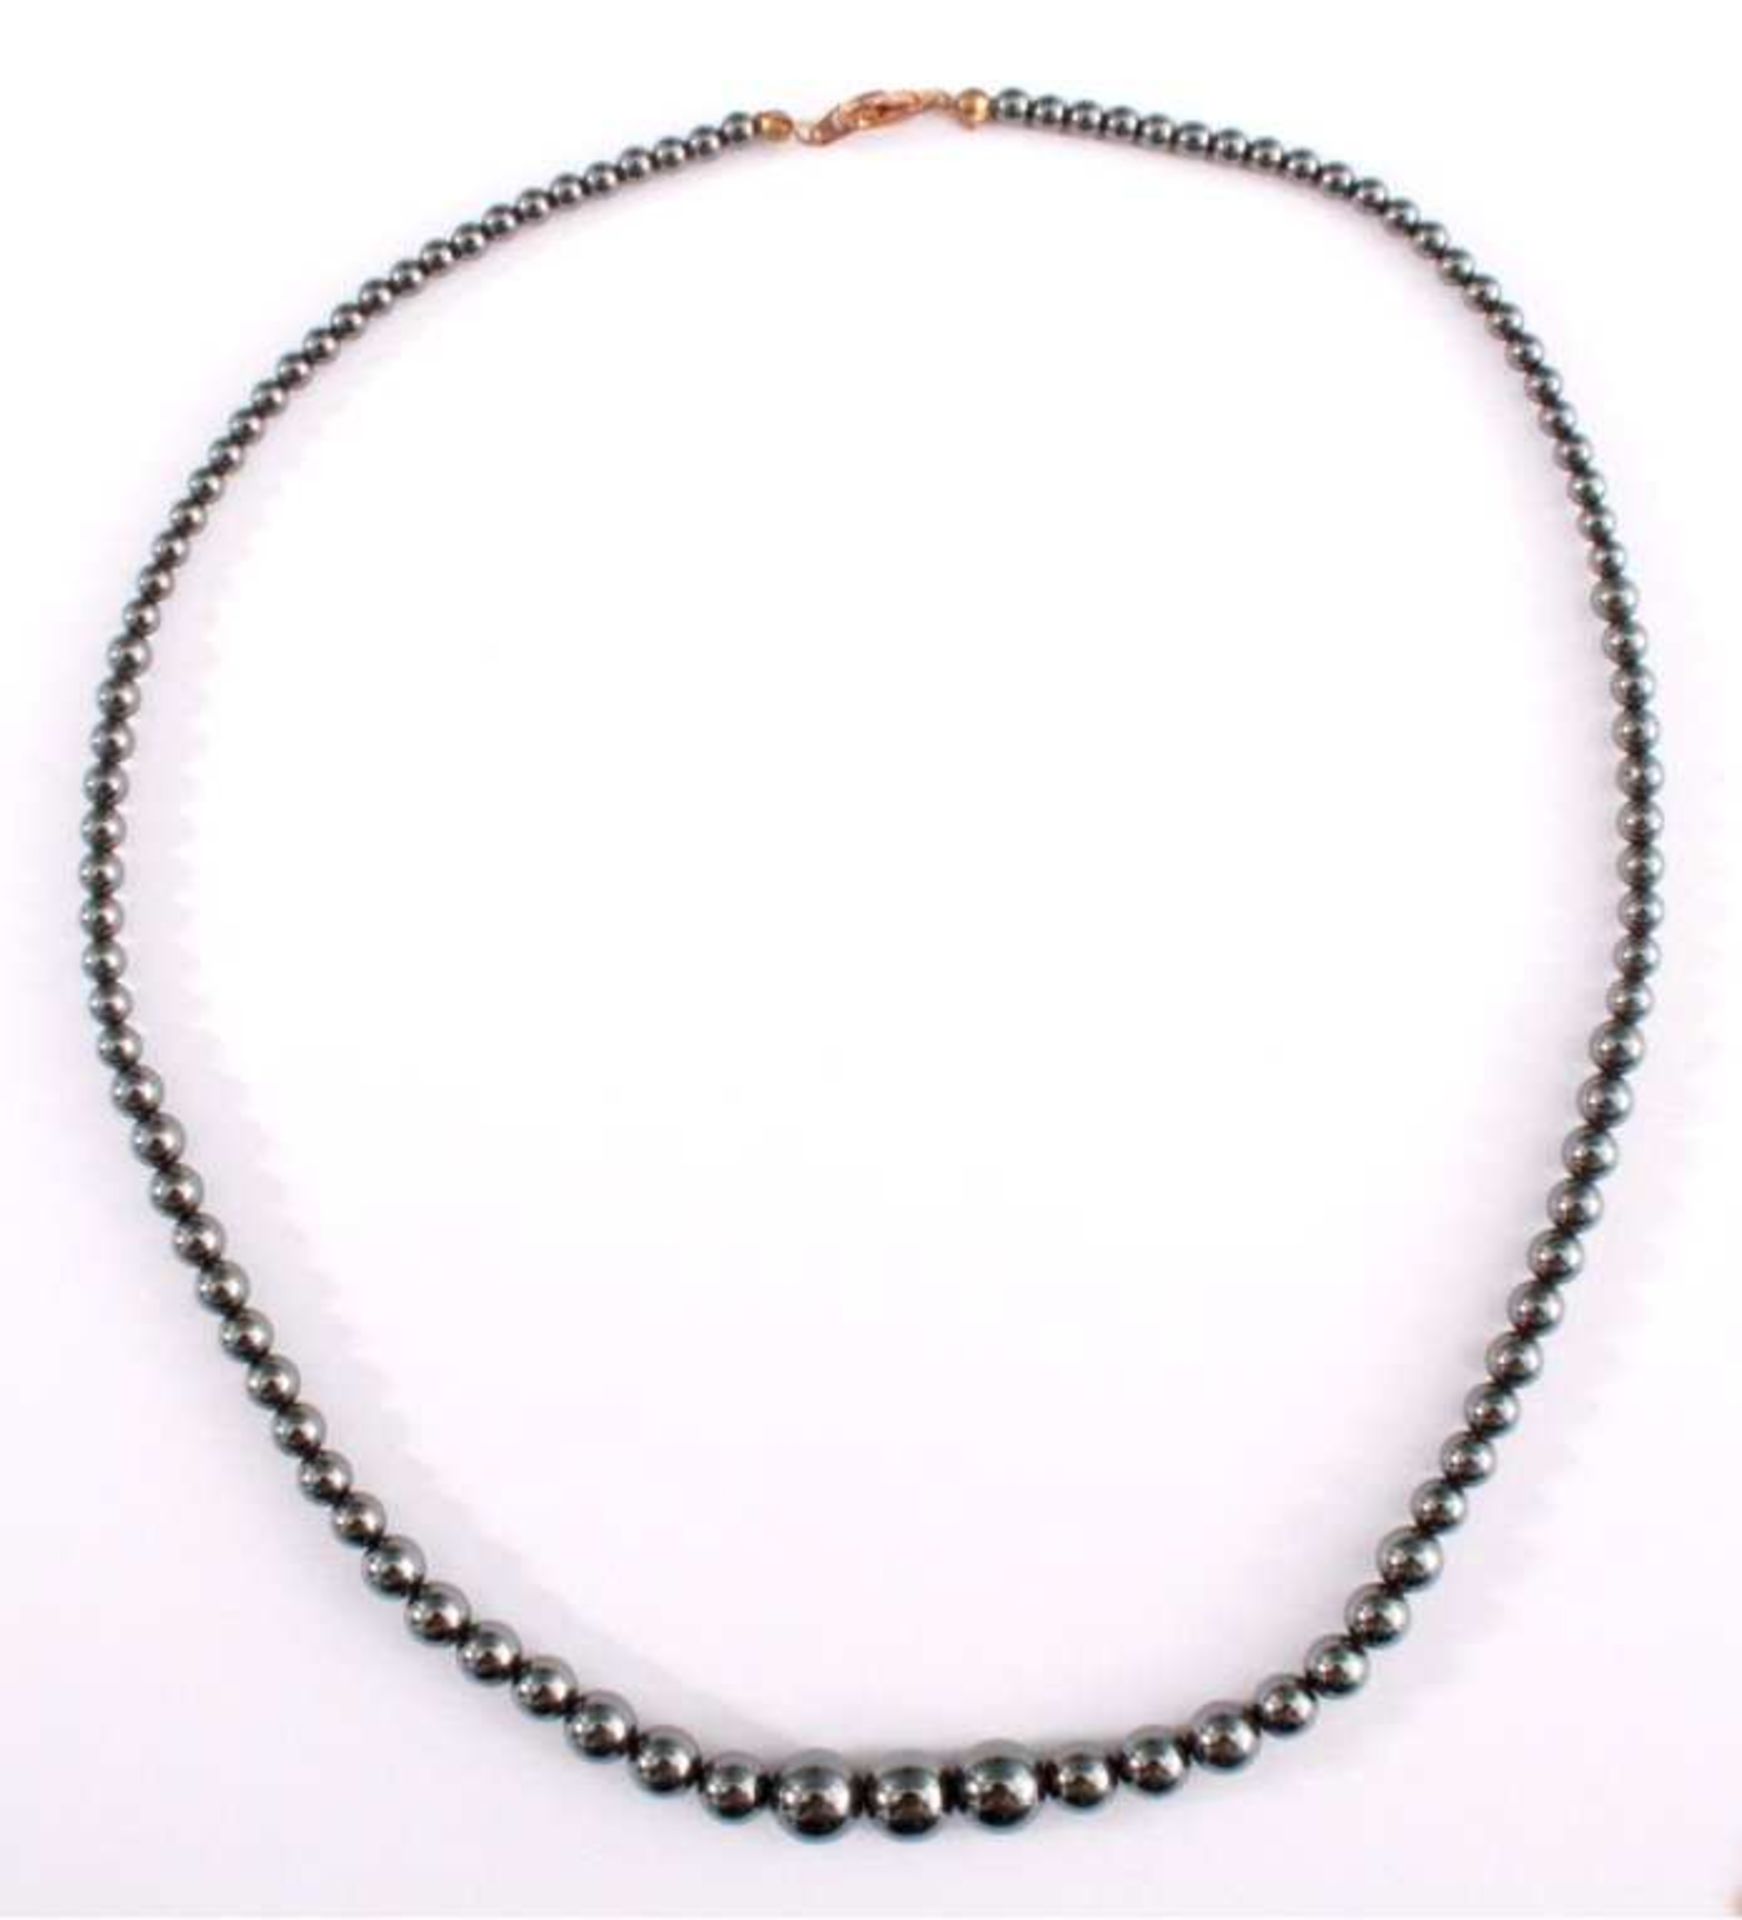 Hämatit-Kettemit Verschluss im Verlauf zusammengesetzt, ca. L der Kette54 cm, ca. D der Perlen 4